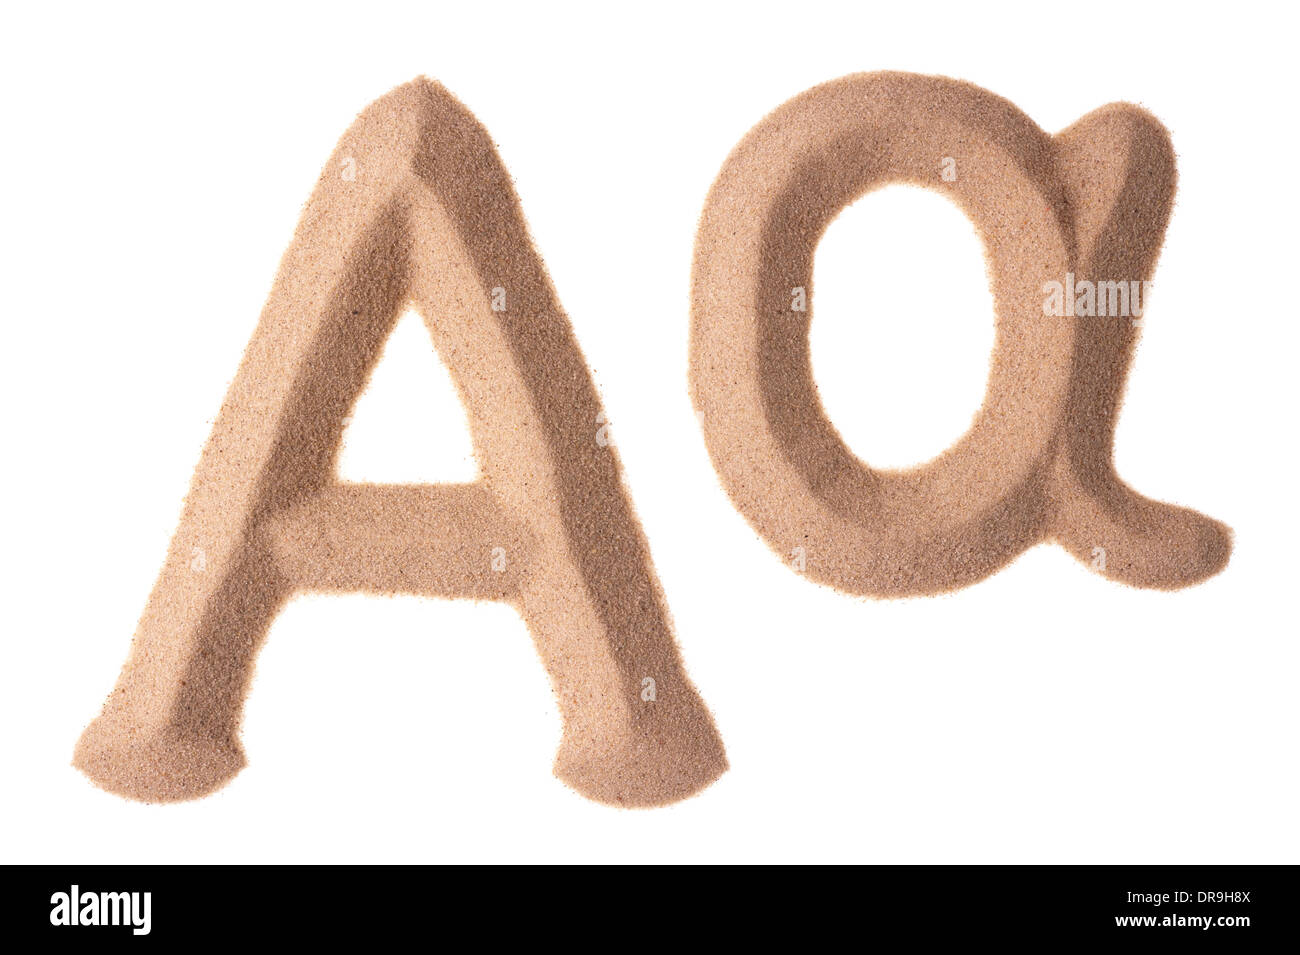 Lettere maiuscole che in lettere minuscole di greco Alfa sign in sculture di sabbia Foto Stock